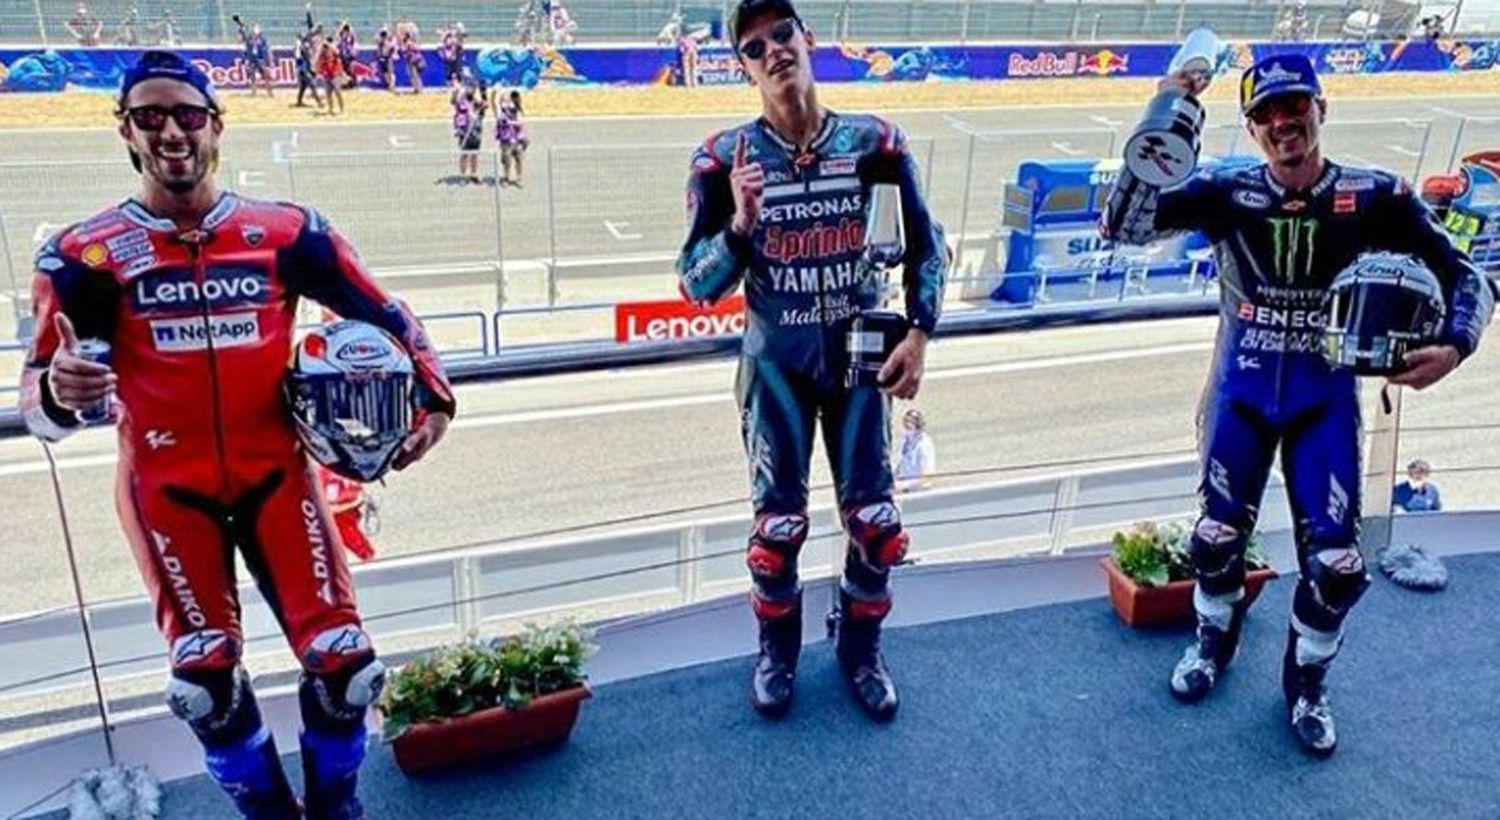 Quartararo gana en el regreso del MotoGP y Marc Maacuterquez sufre una fractura de huacutemero